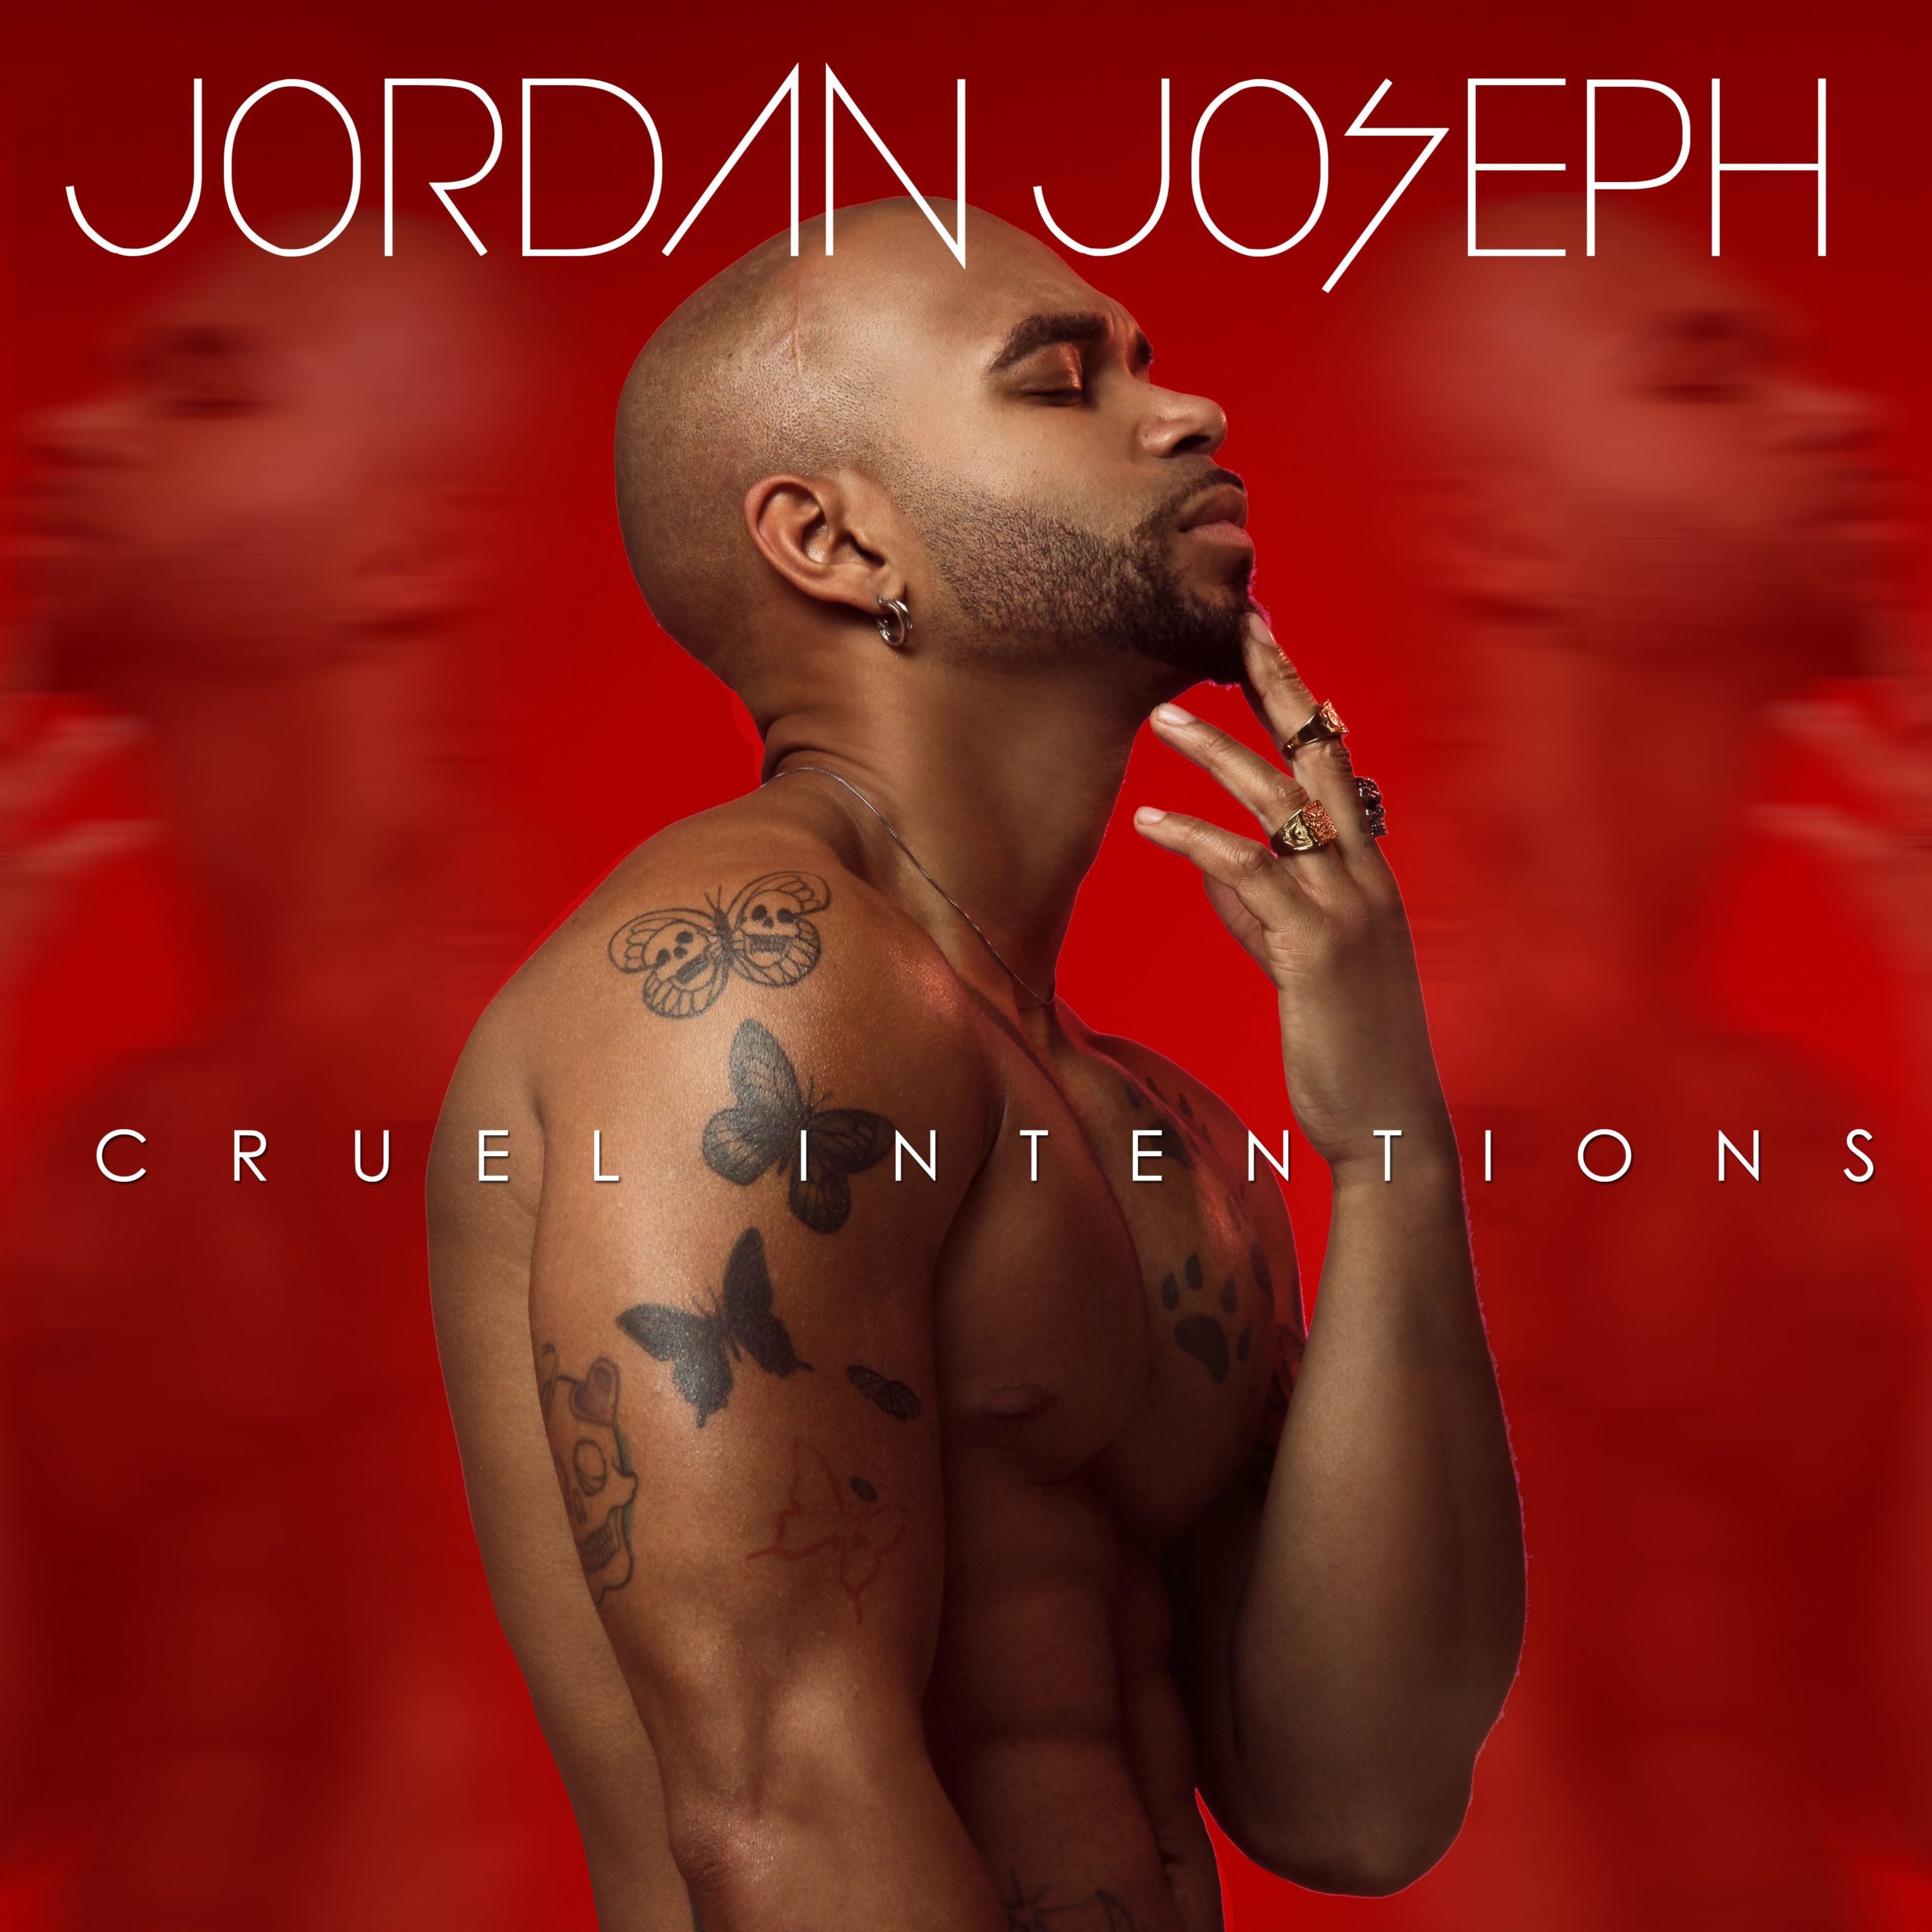 Jordan Joseph – “Cruel Intentions”